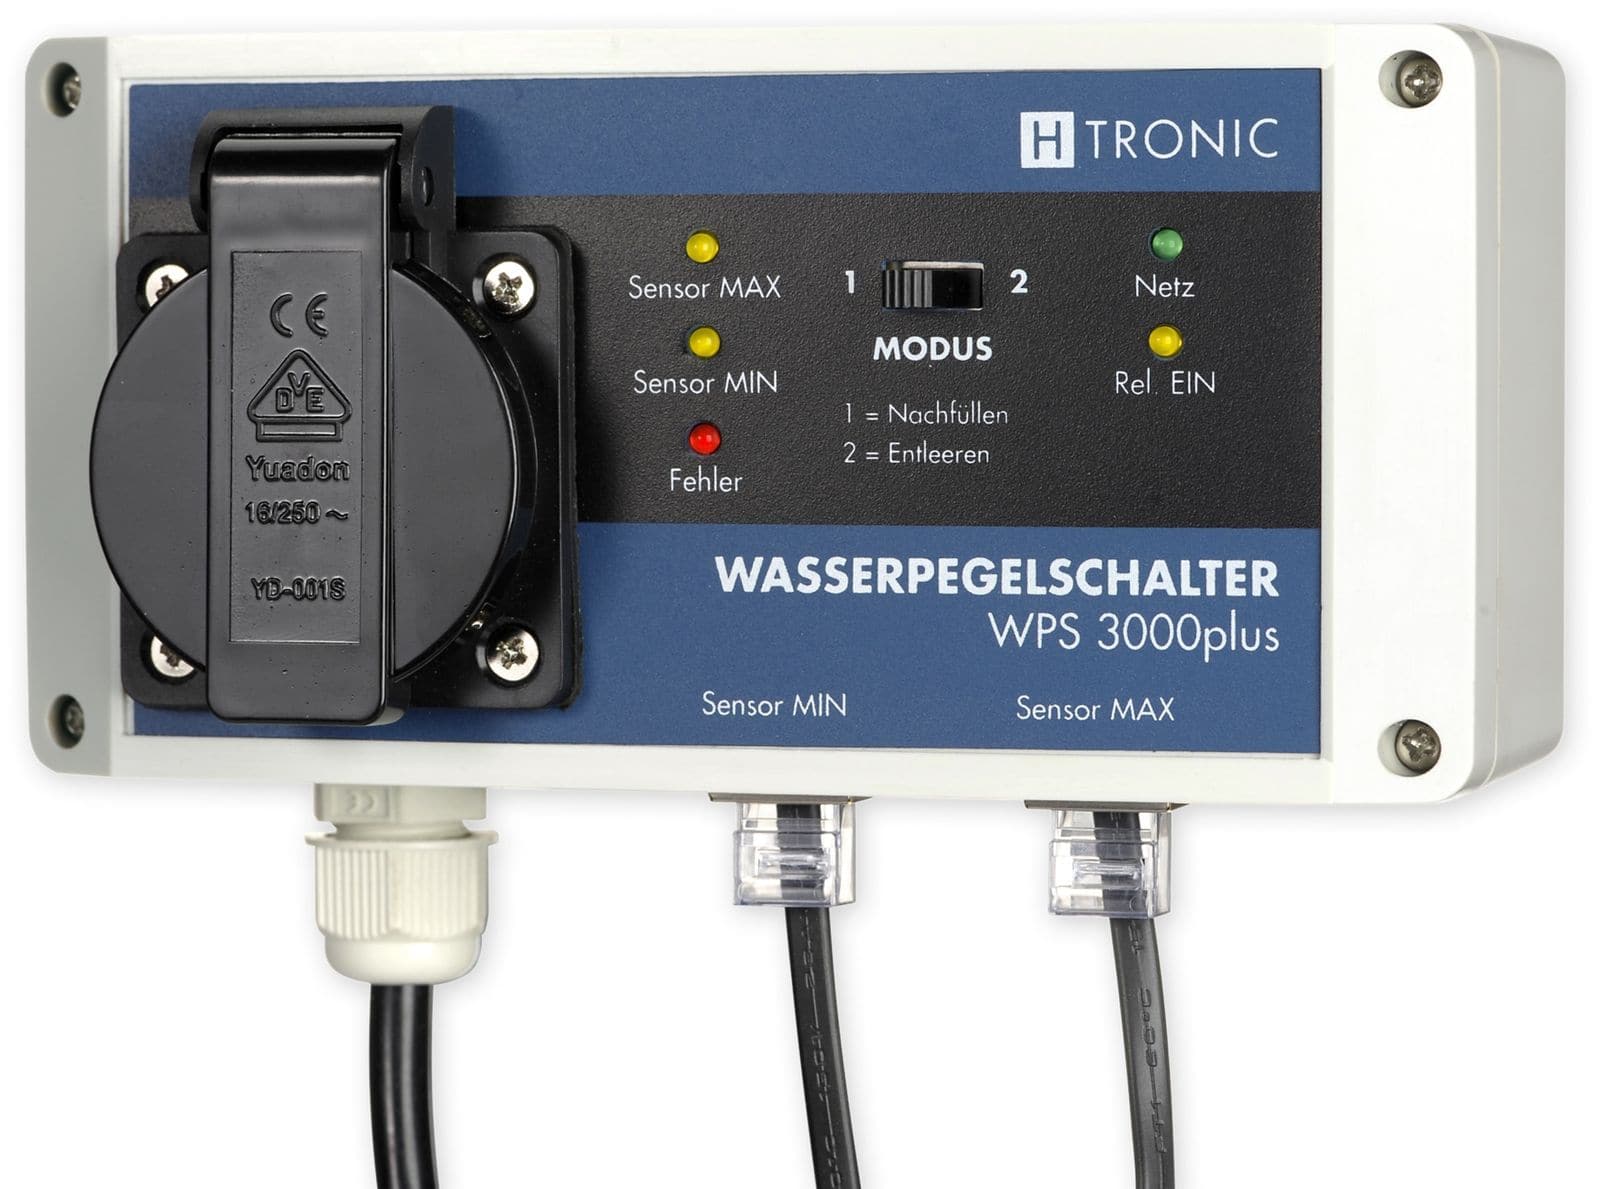 H-TRONIC Wasserpegelschalter WPS3000 plus von H-Tronic